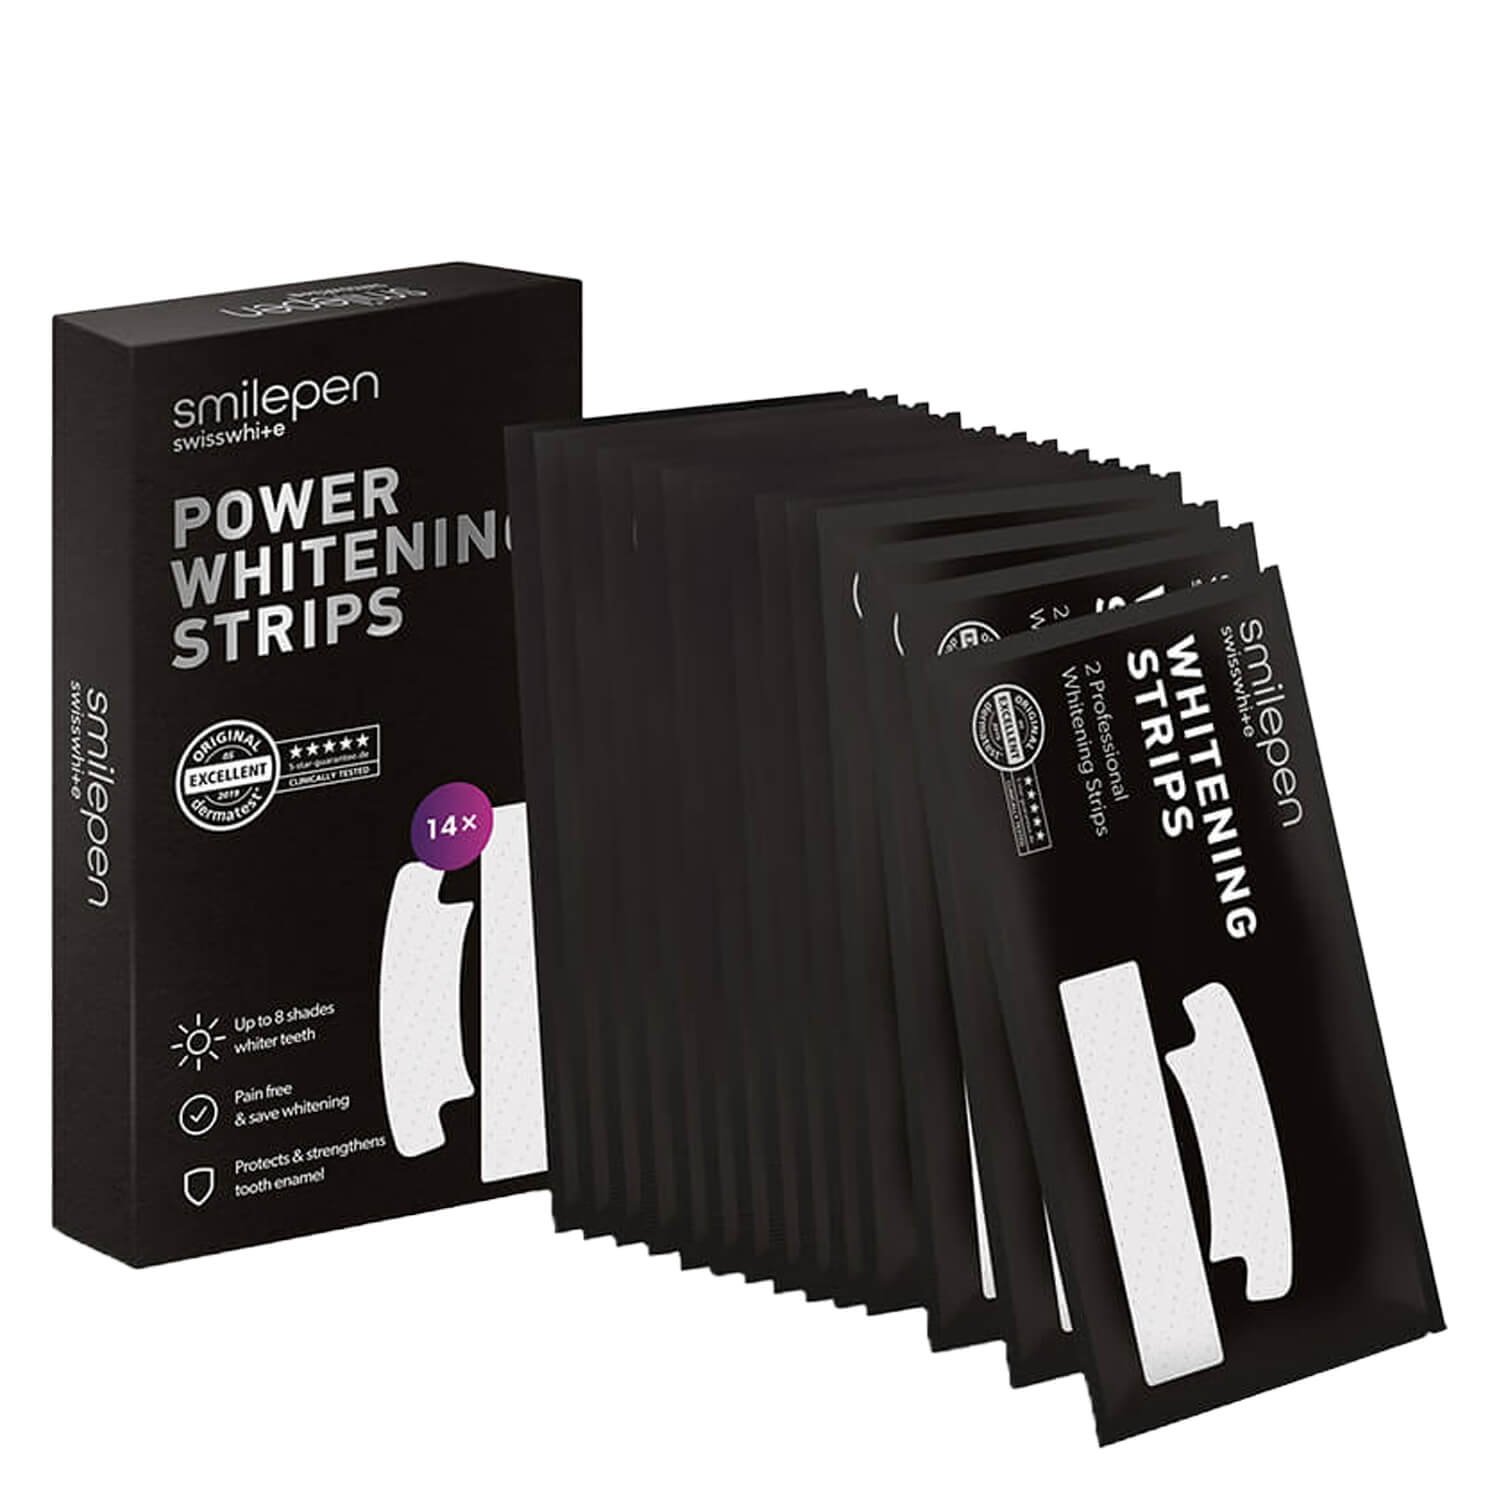 Produktbild von smilepen - Power Whitening Strips